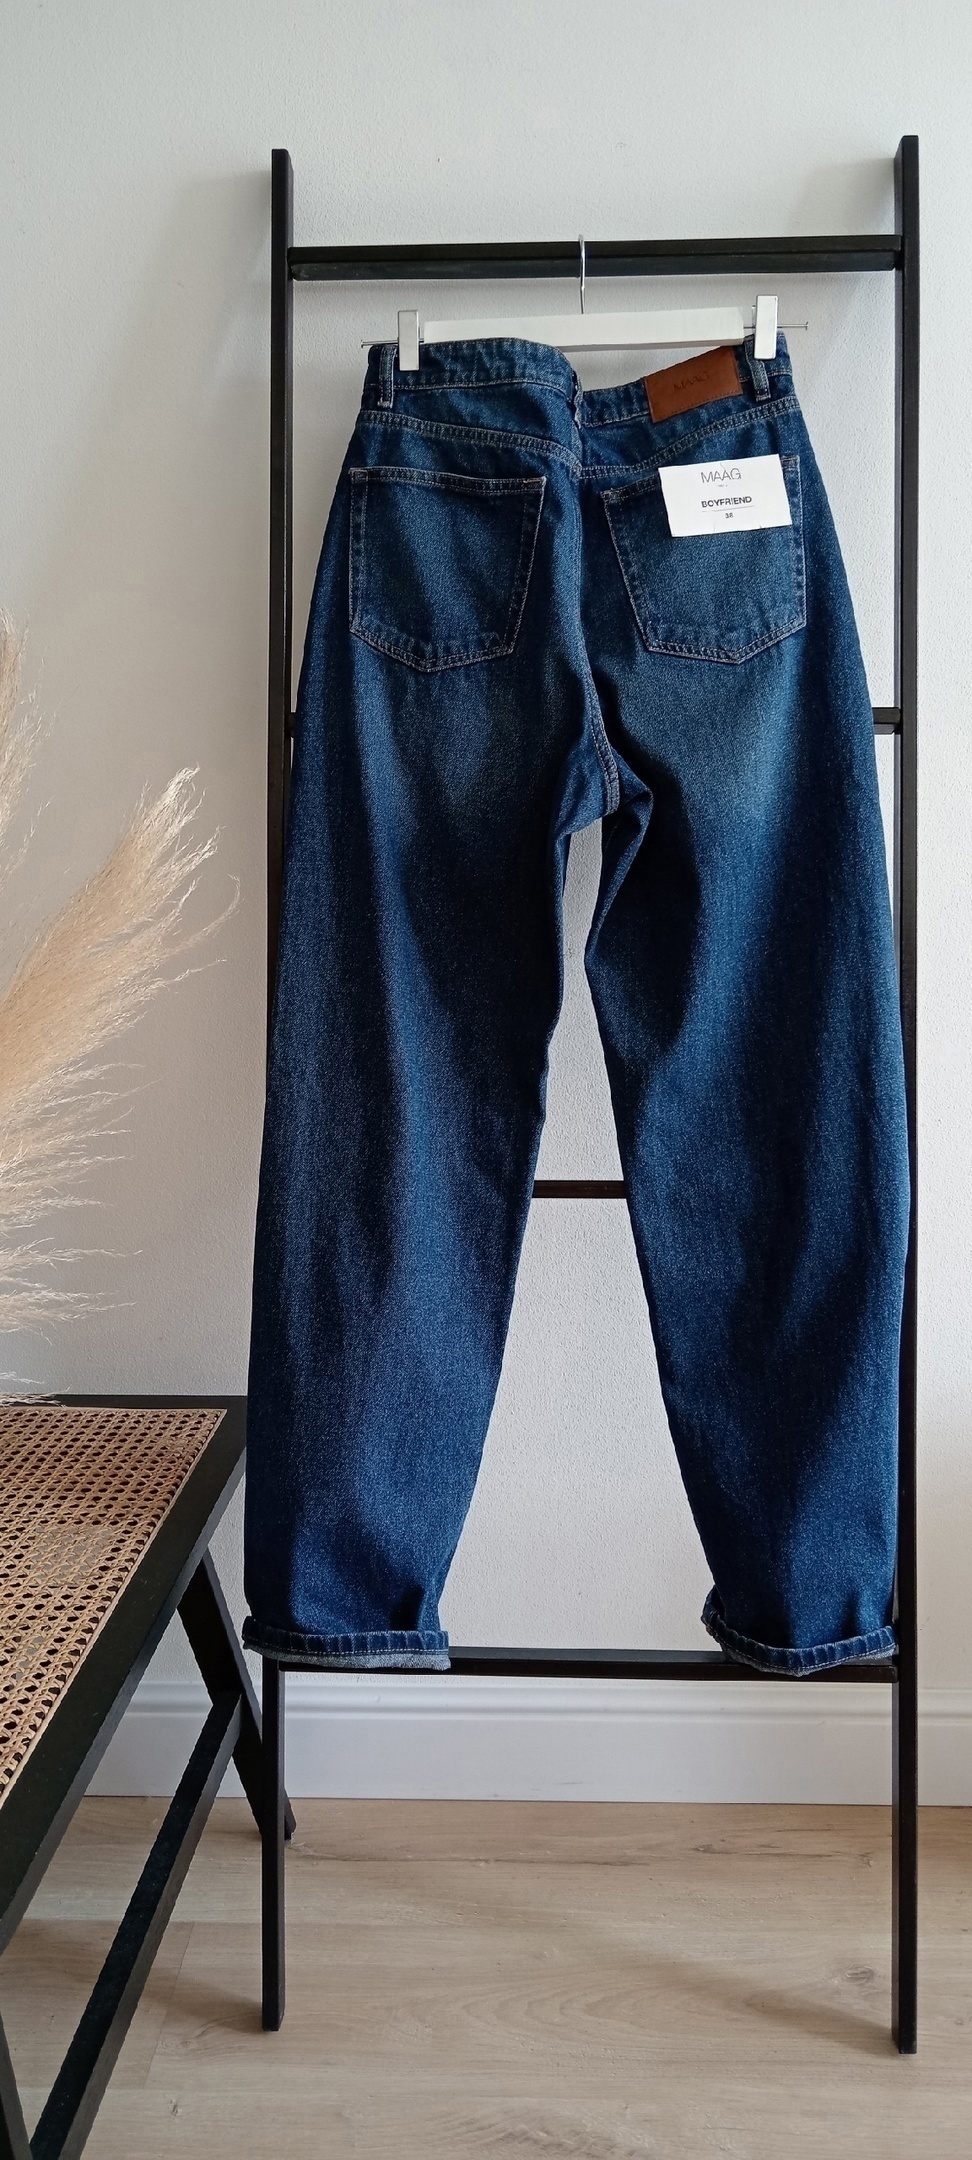 Хлопковое джинсы MAAG 48 размер